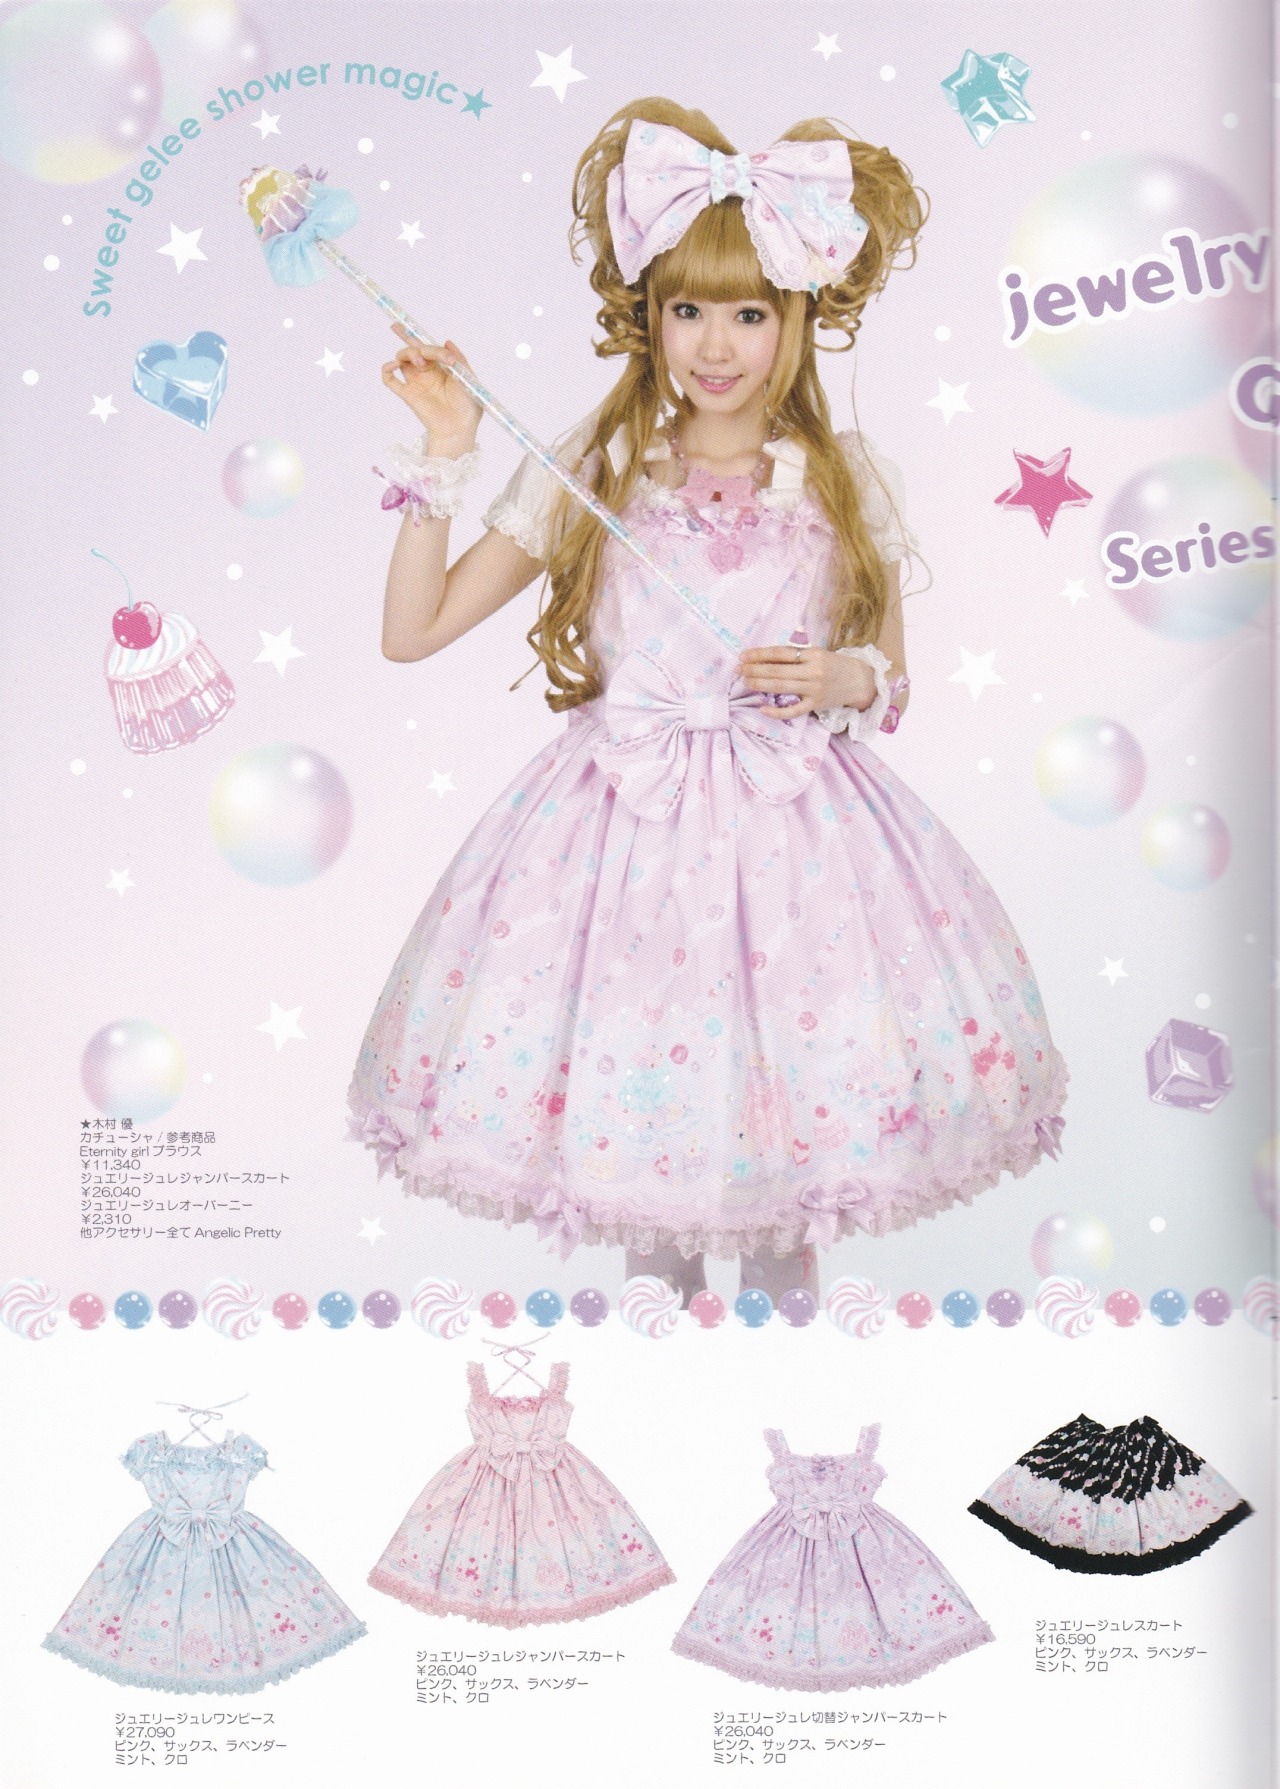 A Raine-y Tumblr — Angelic Pretty Jewelry Jelly 2010 S/S Catalog